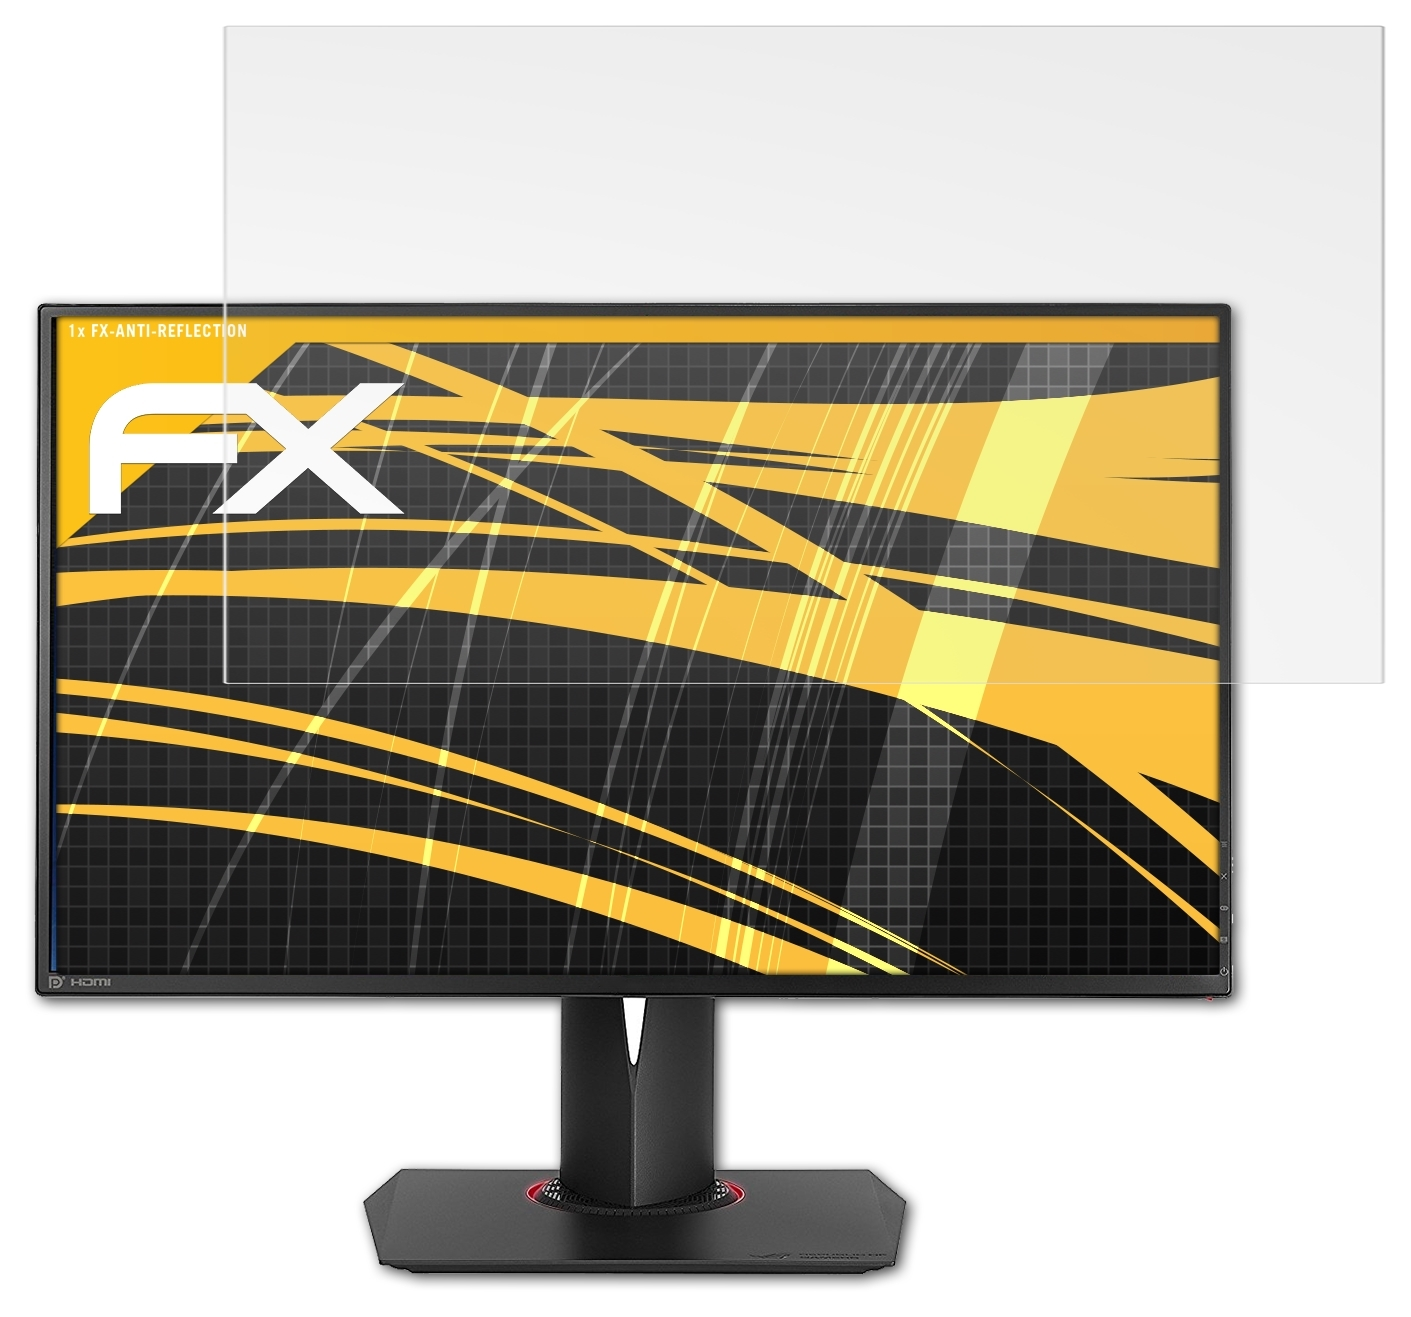 ATFOLIX FX-Antireflex Displayschutz(für Asus ROG Swift PG278QR)